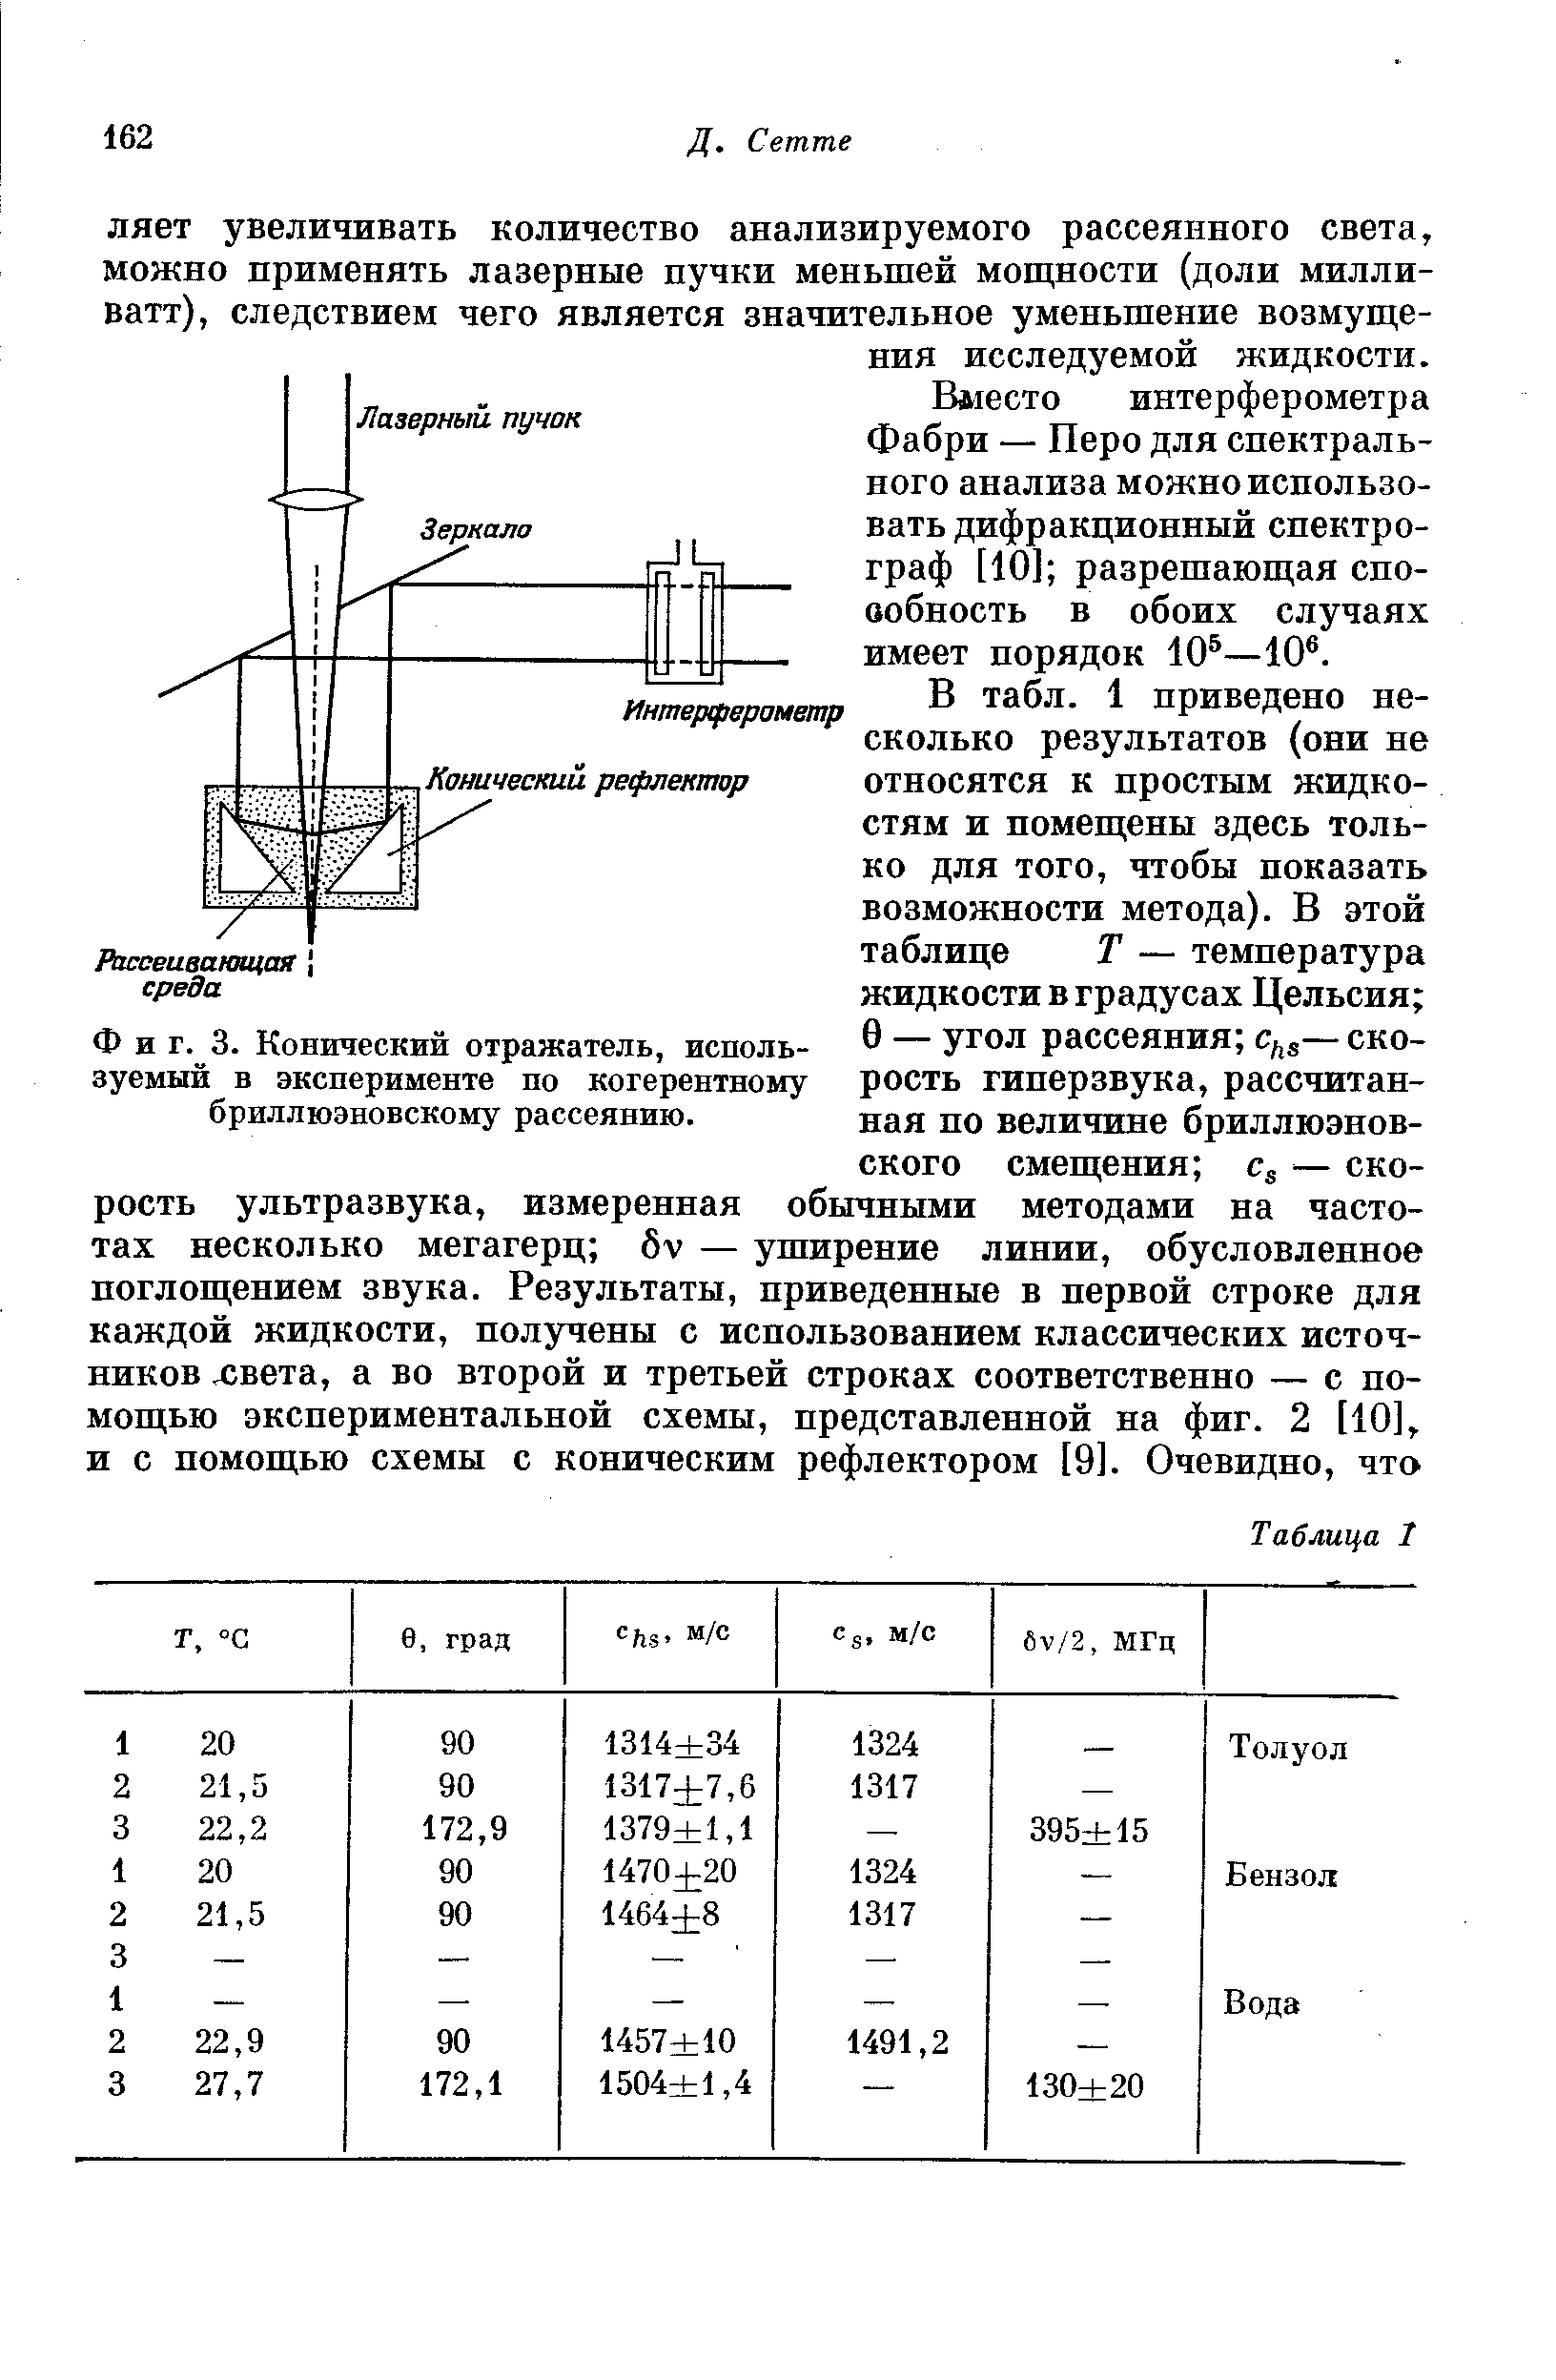 Фиг. 3. Конический отражатель, используемый в эксперименте по когерентному бриллюэновскому рассеянию.
